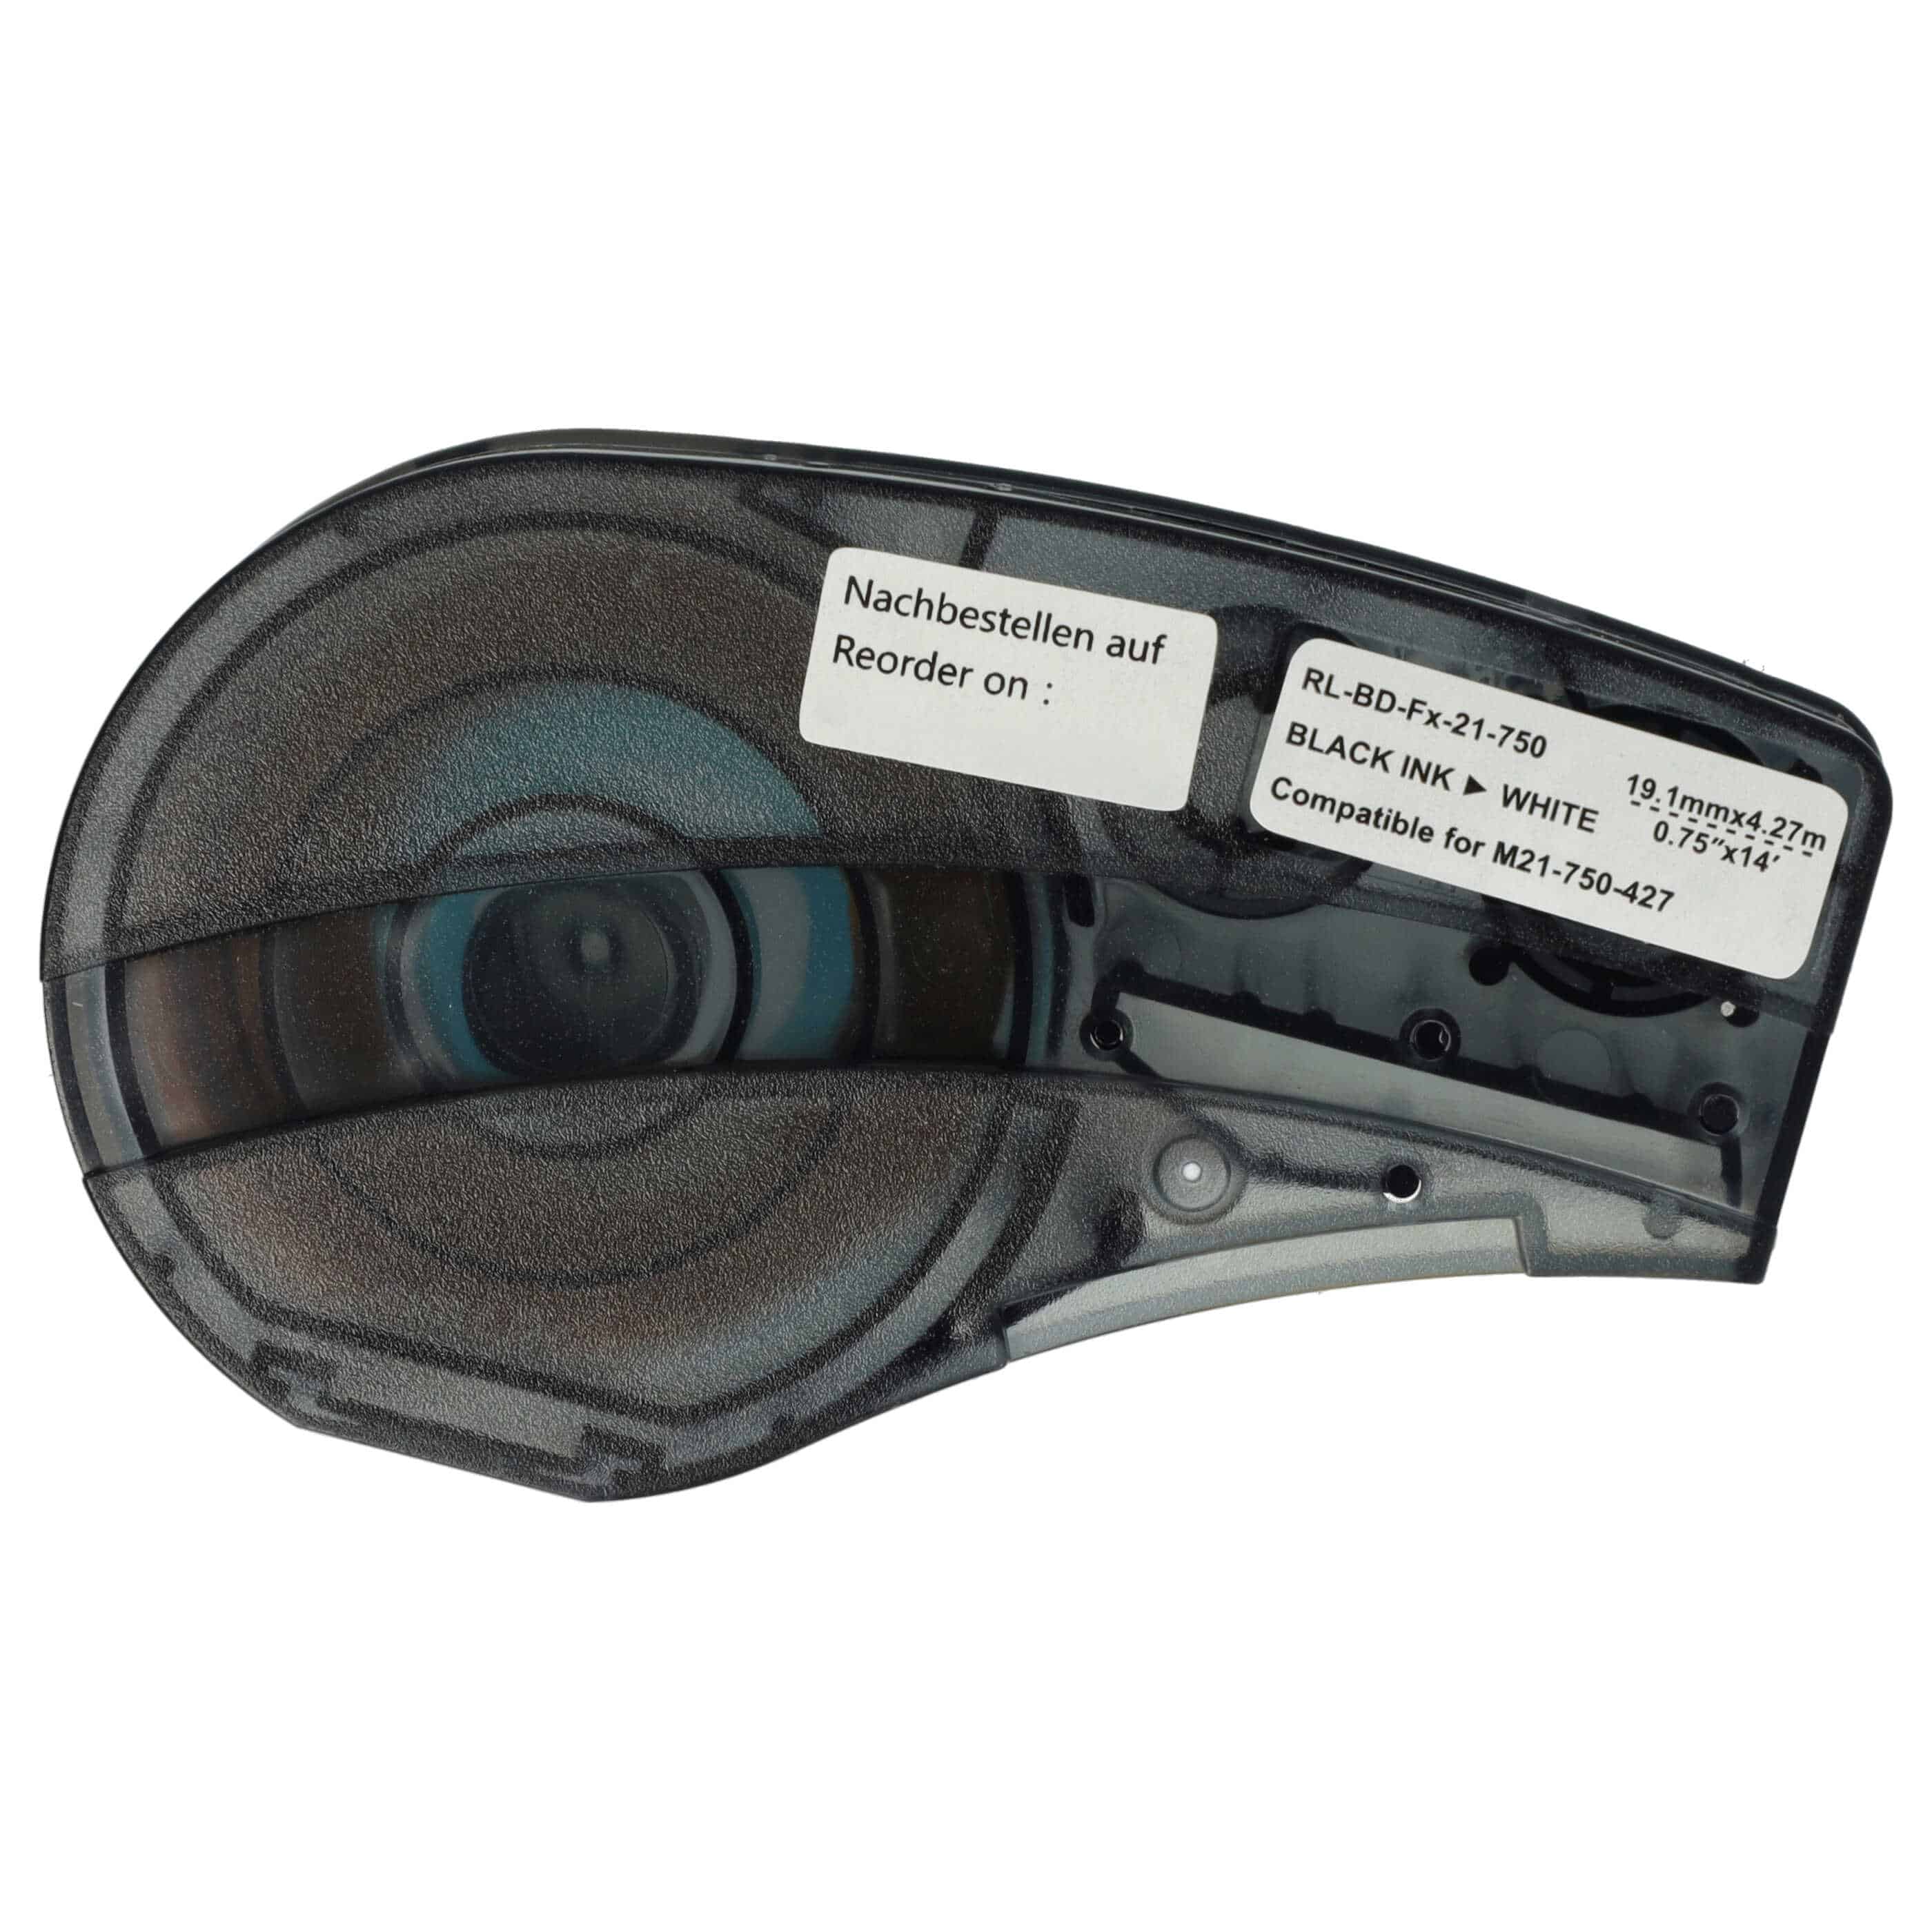 3x Cassetta nastro sostituisce Brady M21-750-427 per etichettatrice Brady 19,05mm nero su bianco, vinile